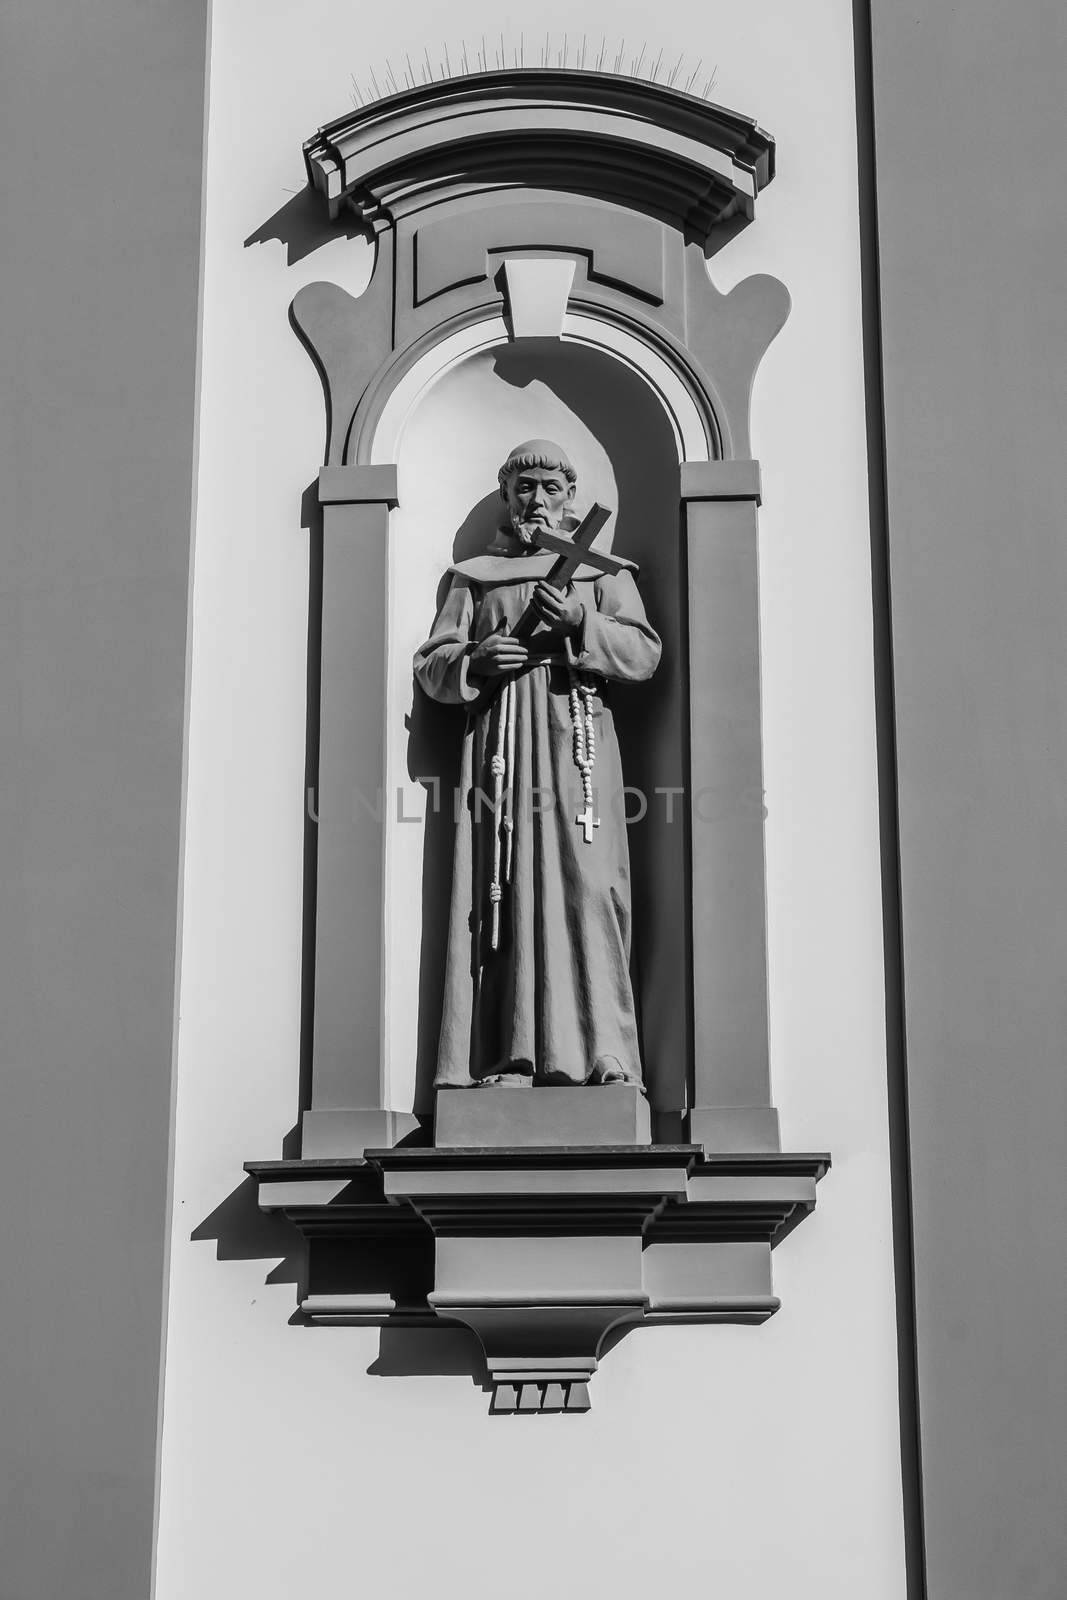 St. Fracis statue by pawel_szczepanski